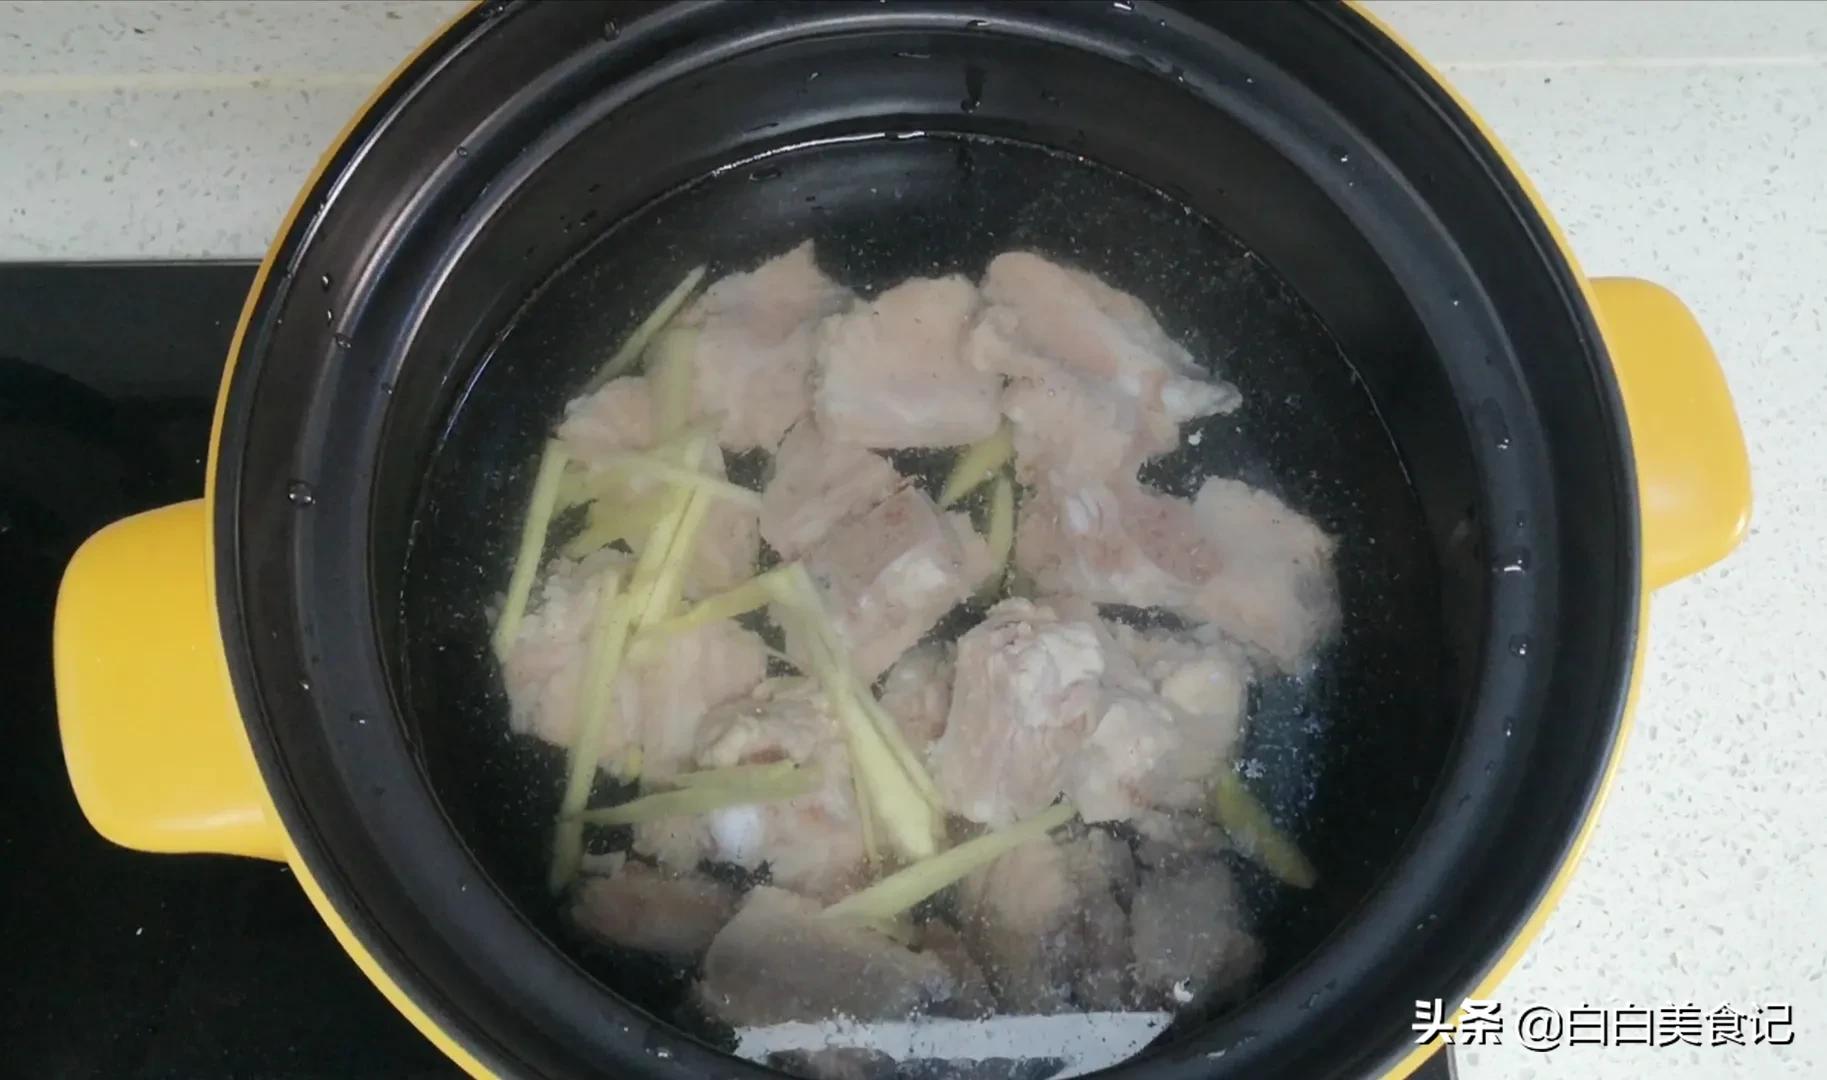 白萝卜排骨汤，砂锅煲可以使食物和汤长时间焖煮使肉烂，汤汁鲜美